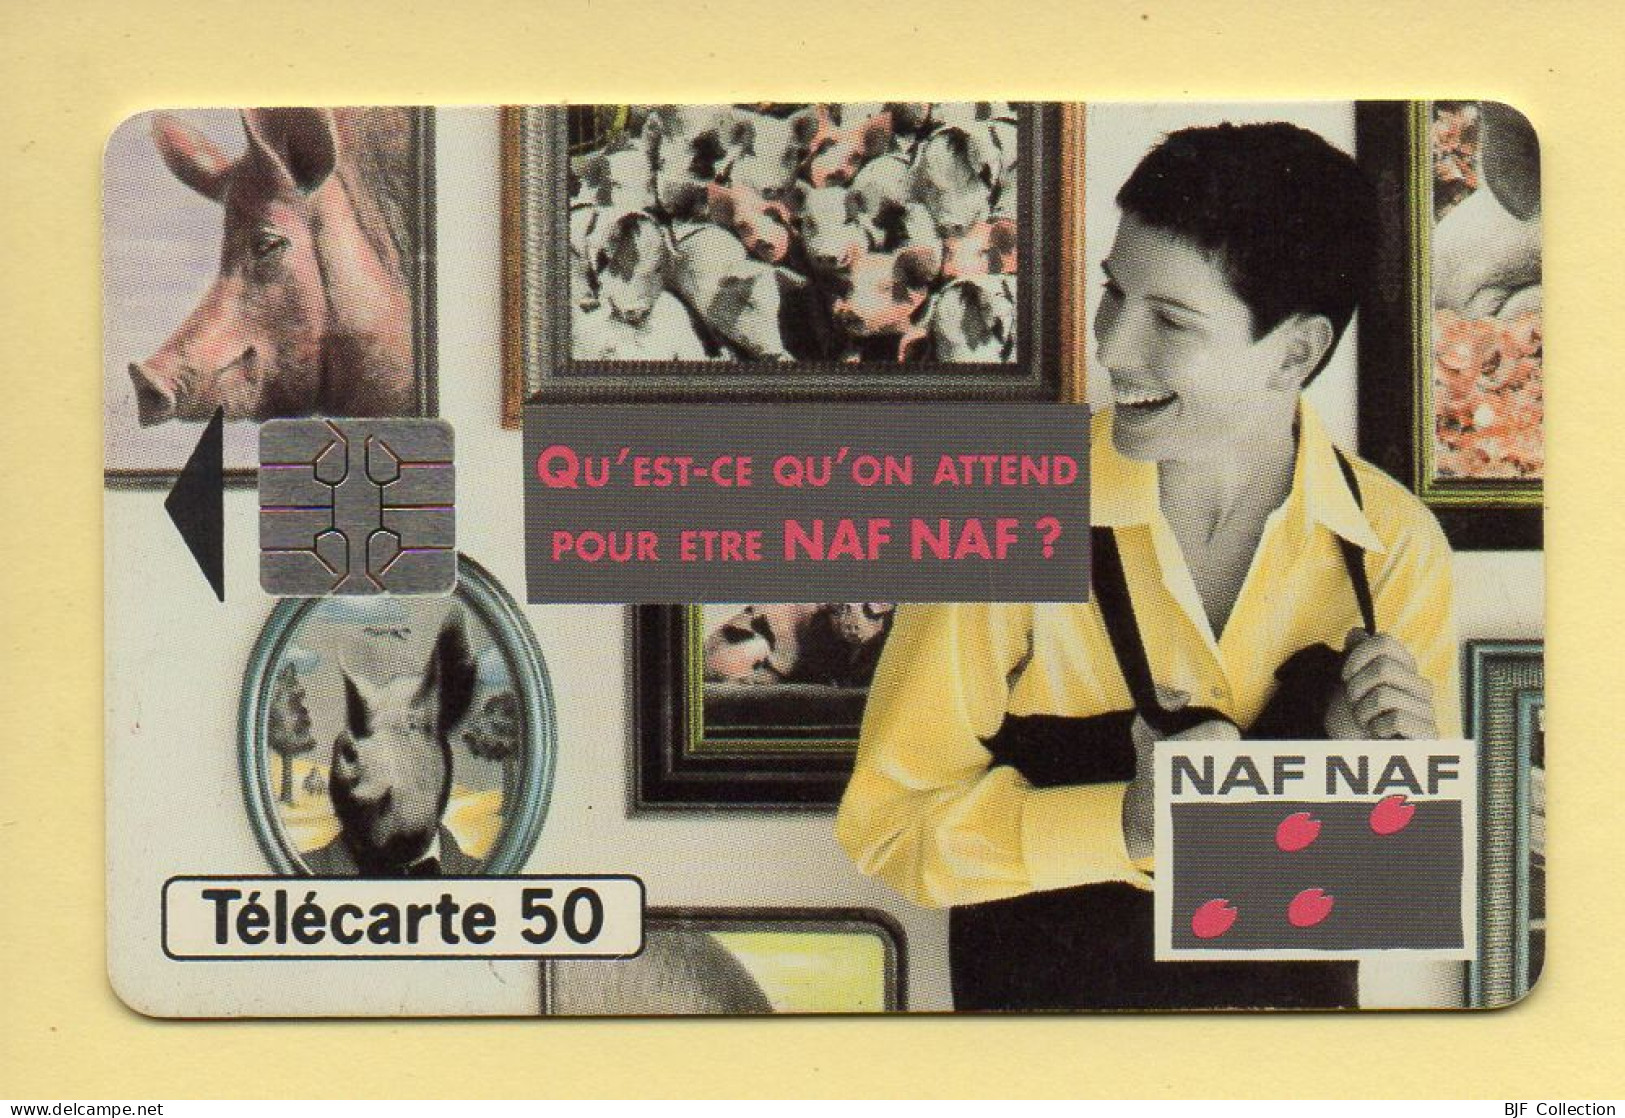 Télécarte 1994 : NAF NAF / 50 Unités / Numéro A 4B013691/473641954 / 10-94 (voir Puce Et Numéro Au Dos) - 1994